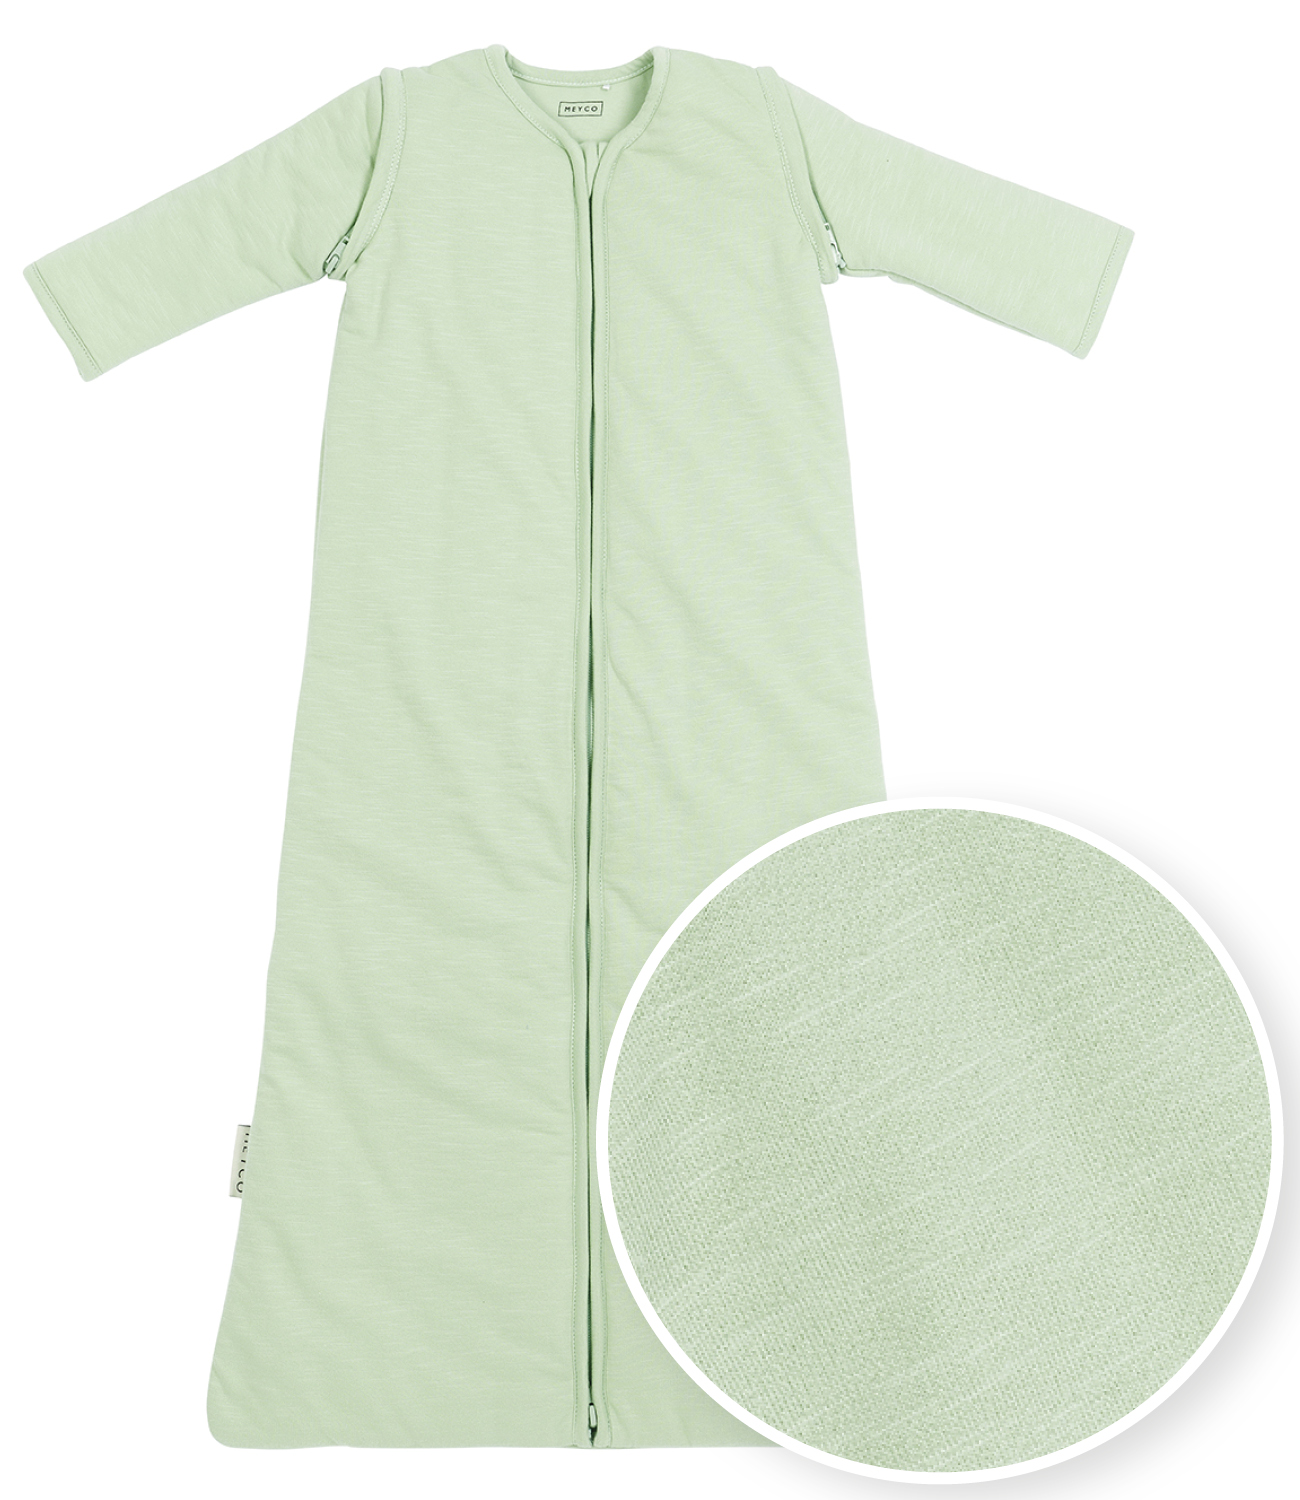 Babyschlafsack mit abnehmbaren Ärmeln Slub - soft green - 90cm